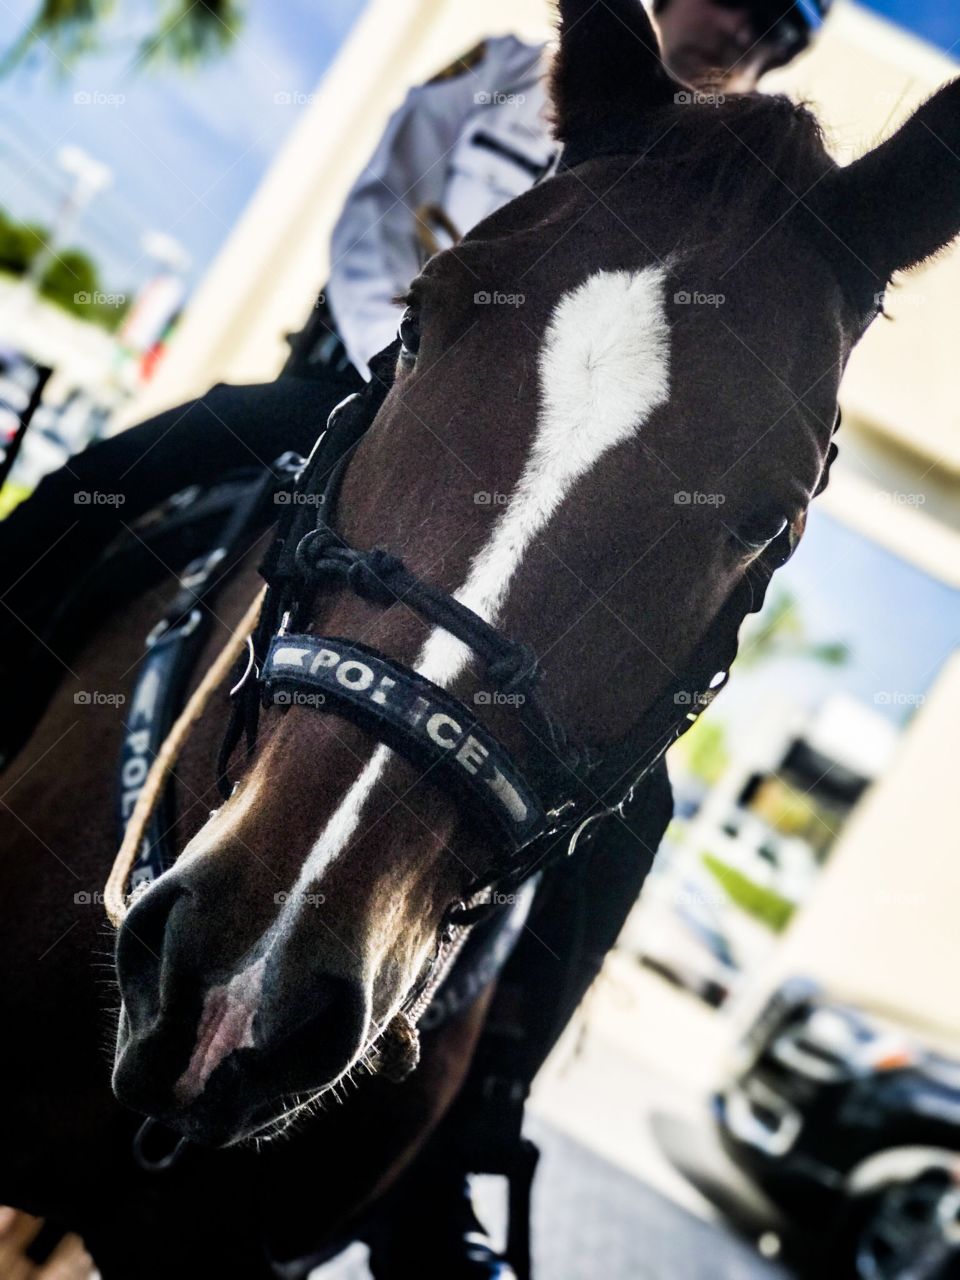 Miami police horse